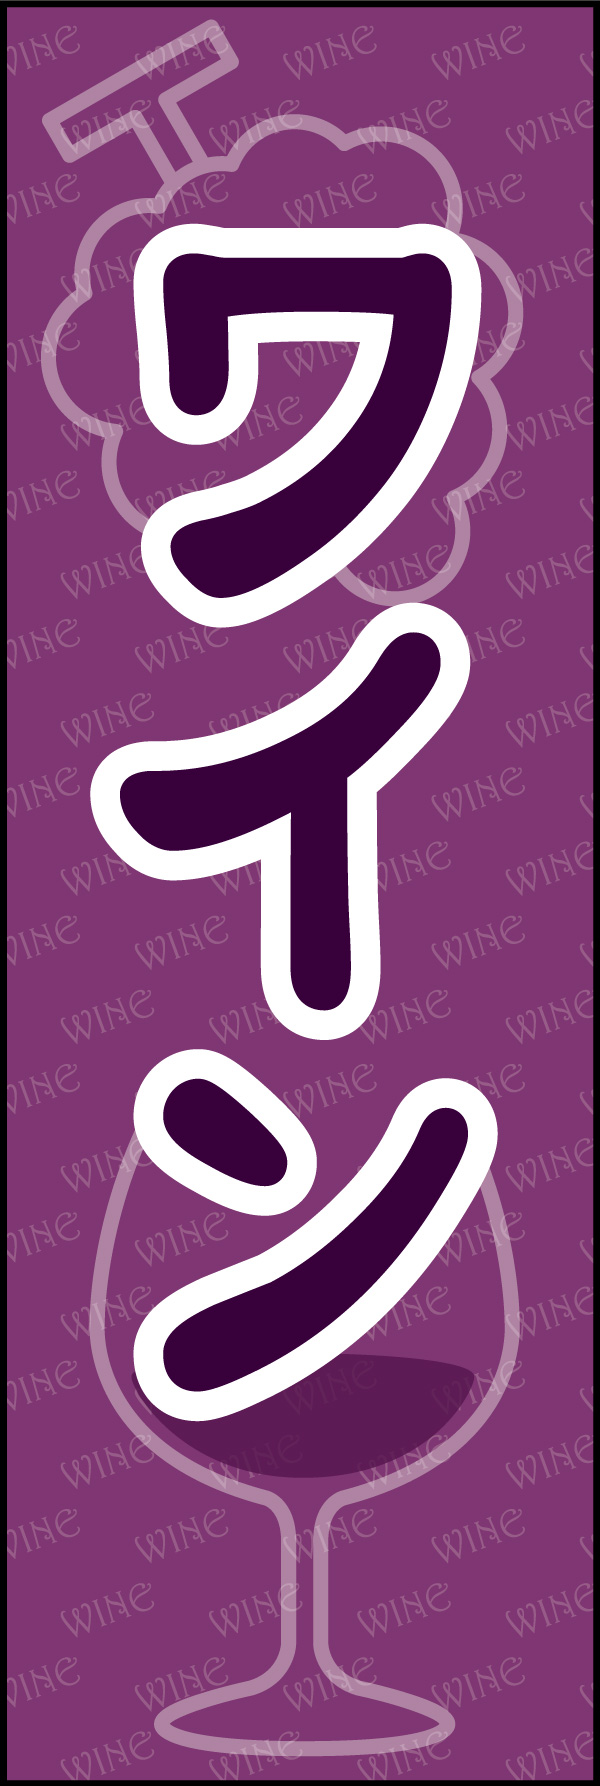 ワイン 05「ワイン」ののぼりです。可愛らしいデザインにしました。(Y.M) 